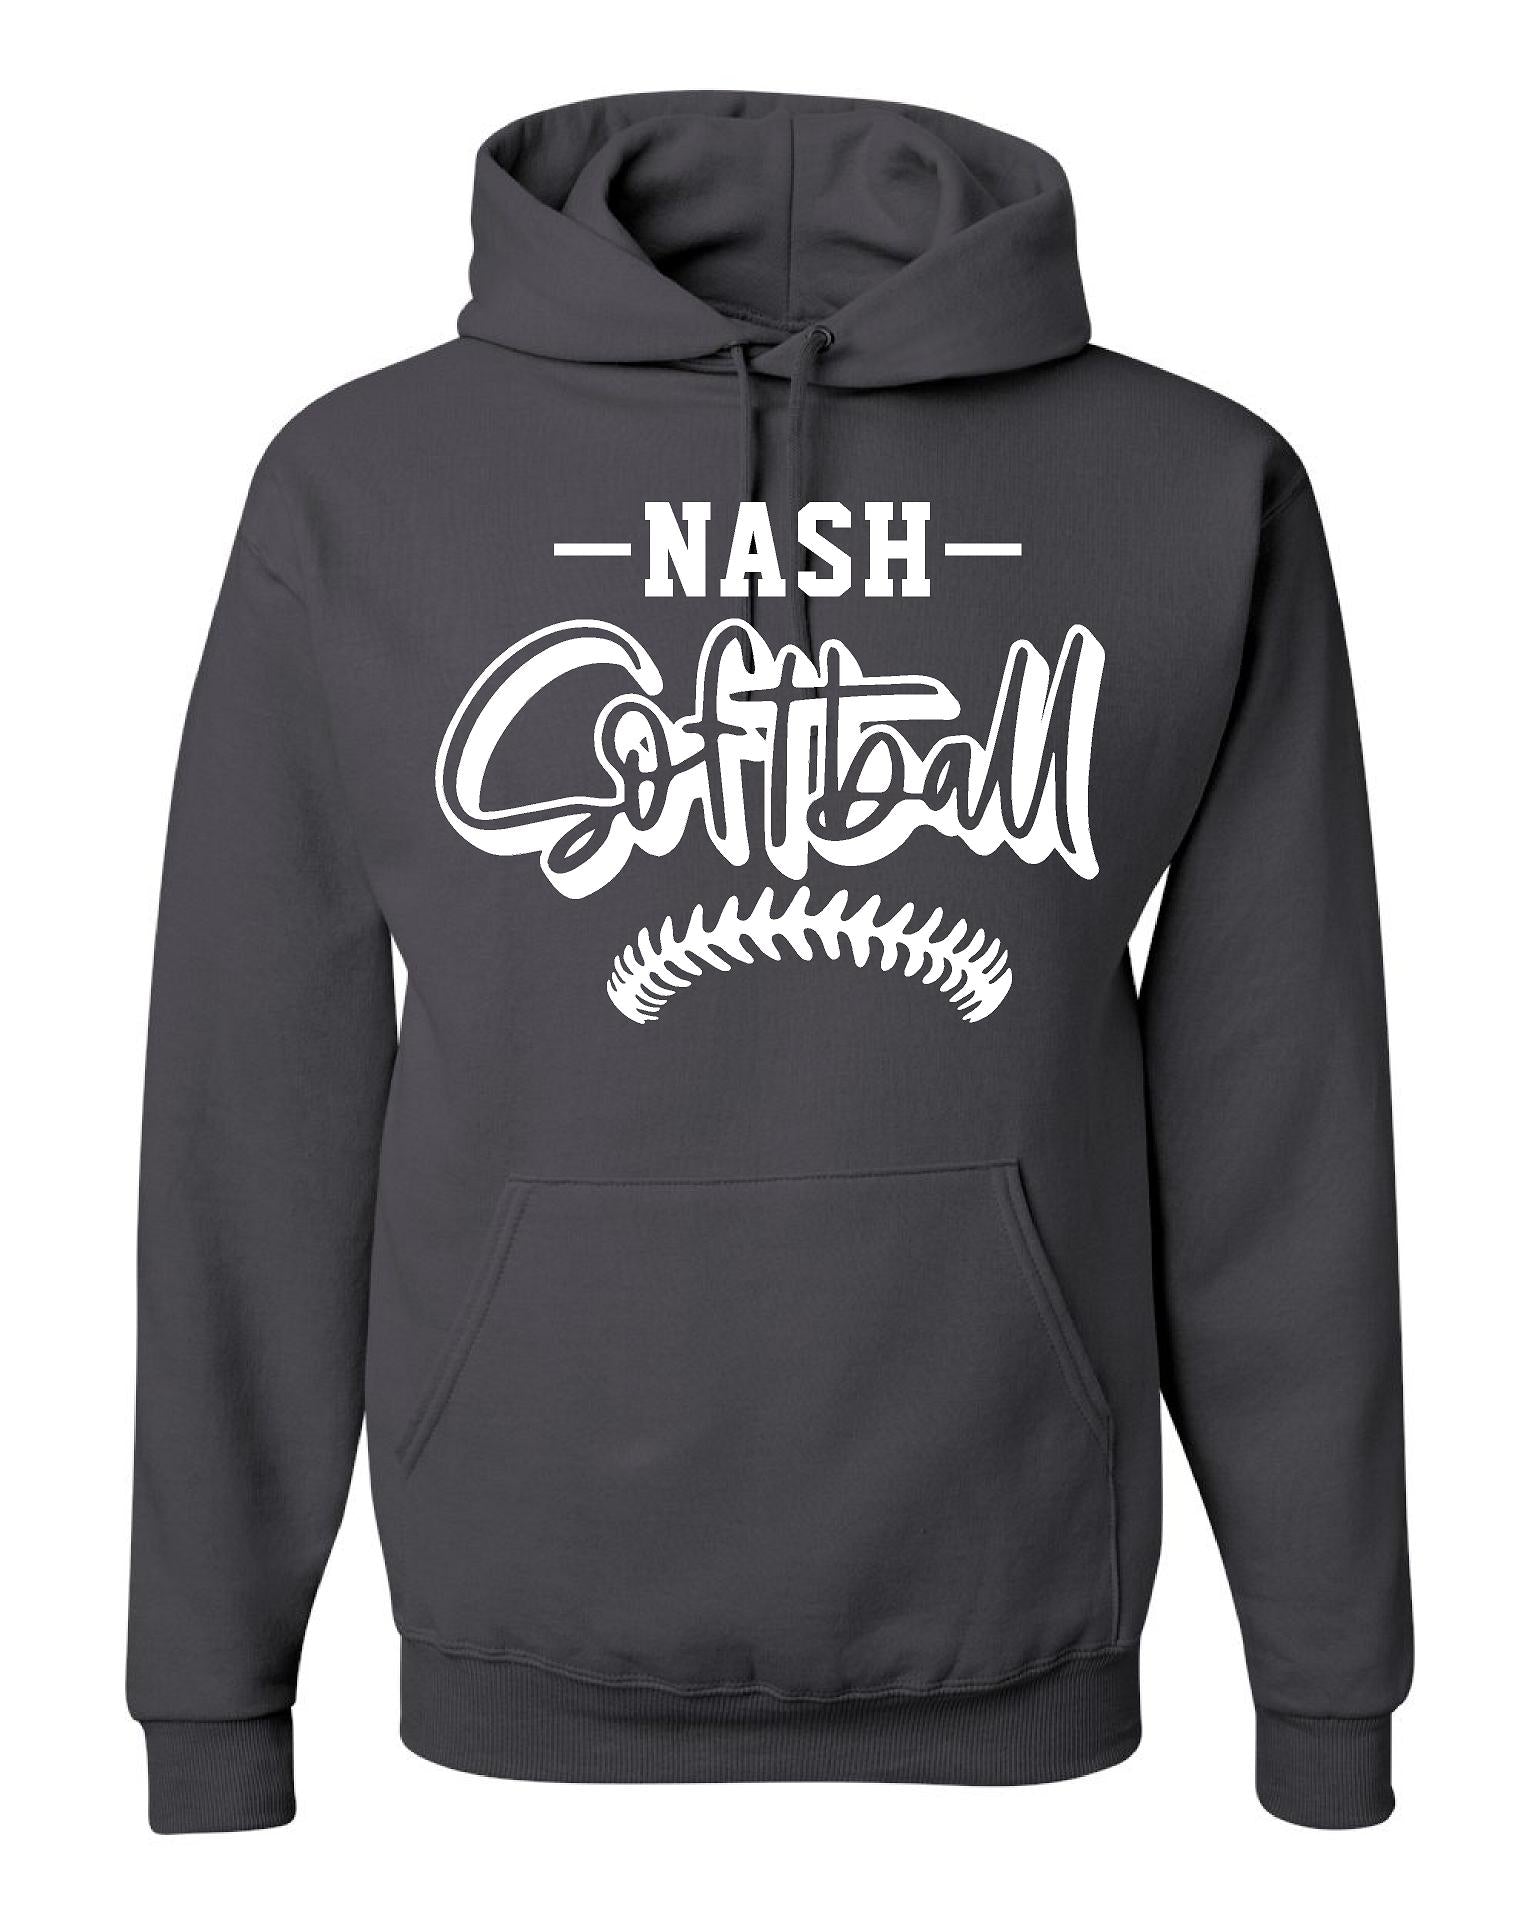 Nash Softball Apparel